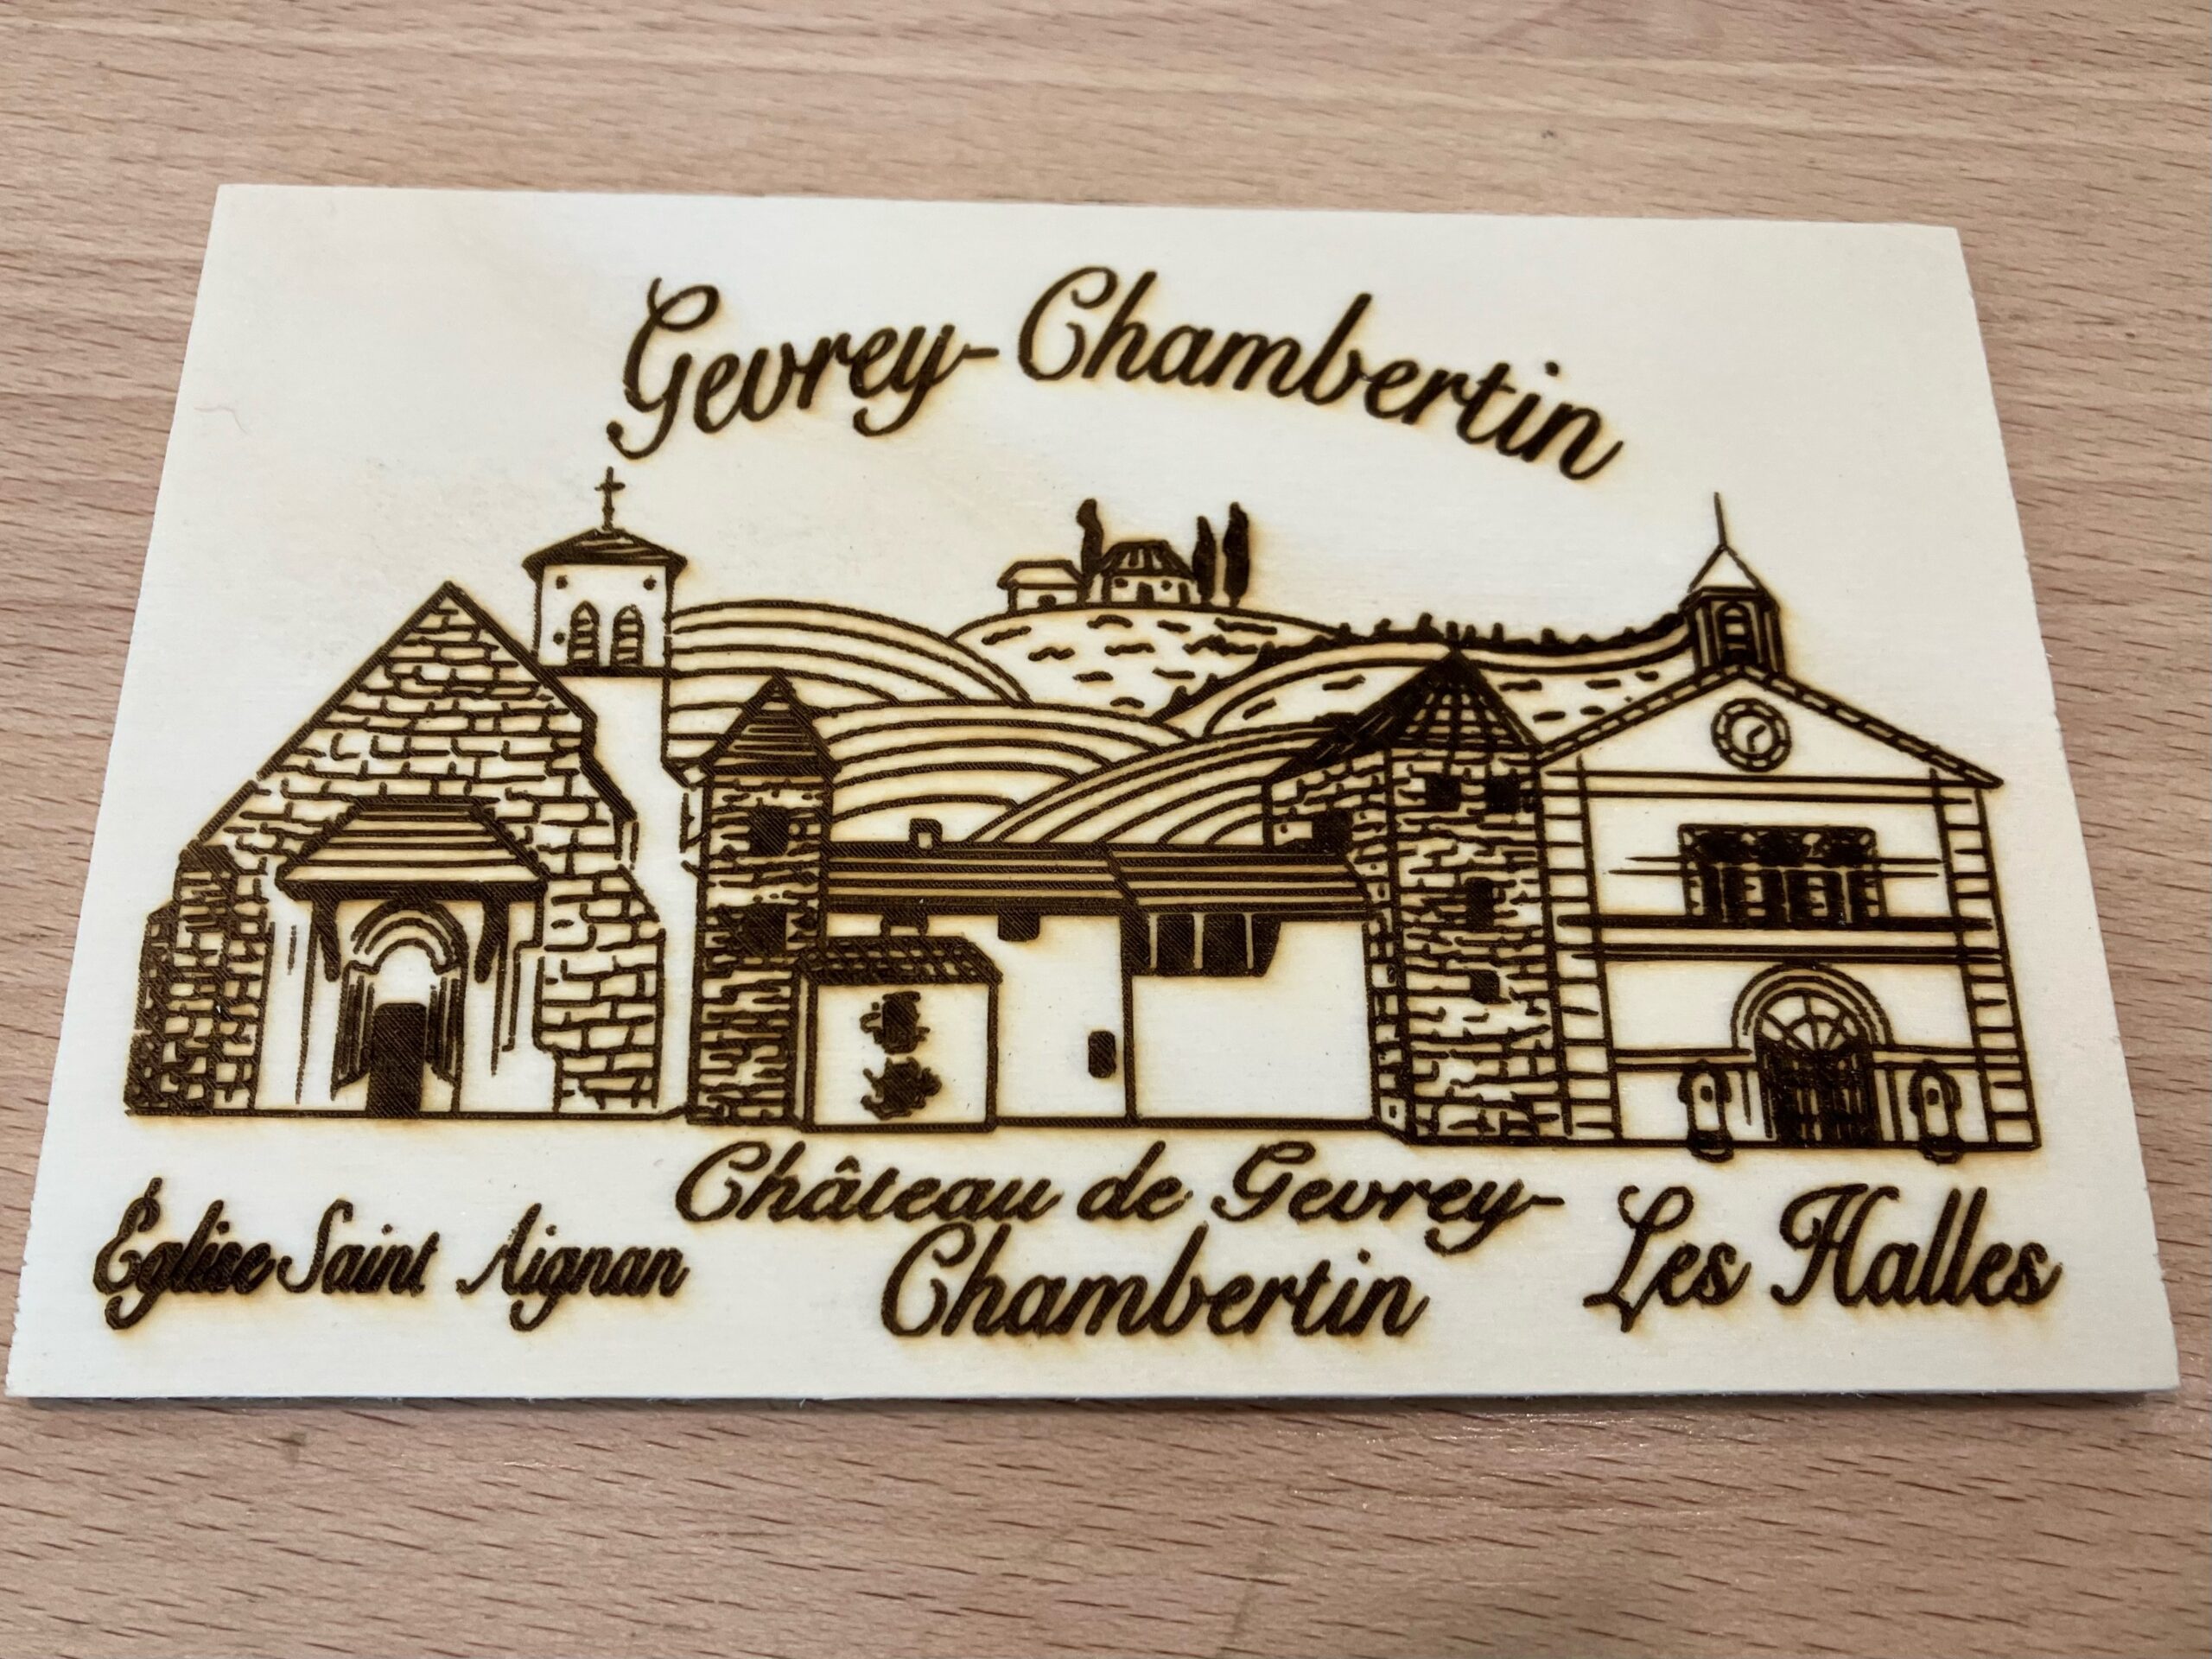 Coffrets 4 bières - Office de Tourisme Gevrey-Chambertin Nuits-Saint-Georges